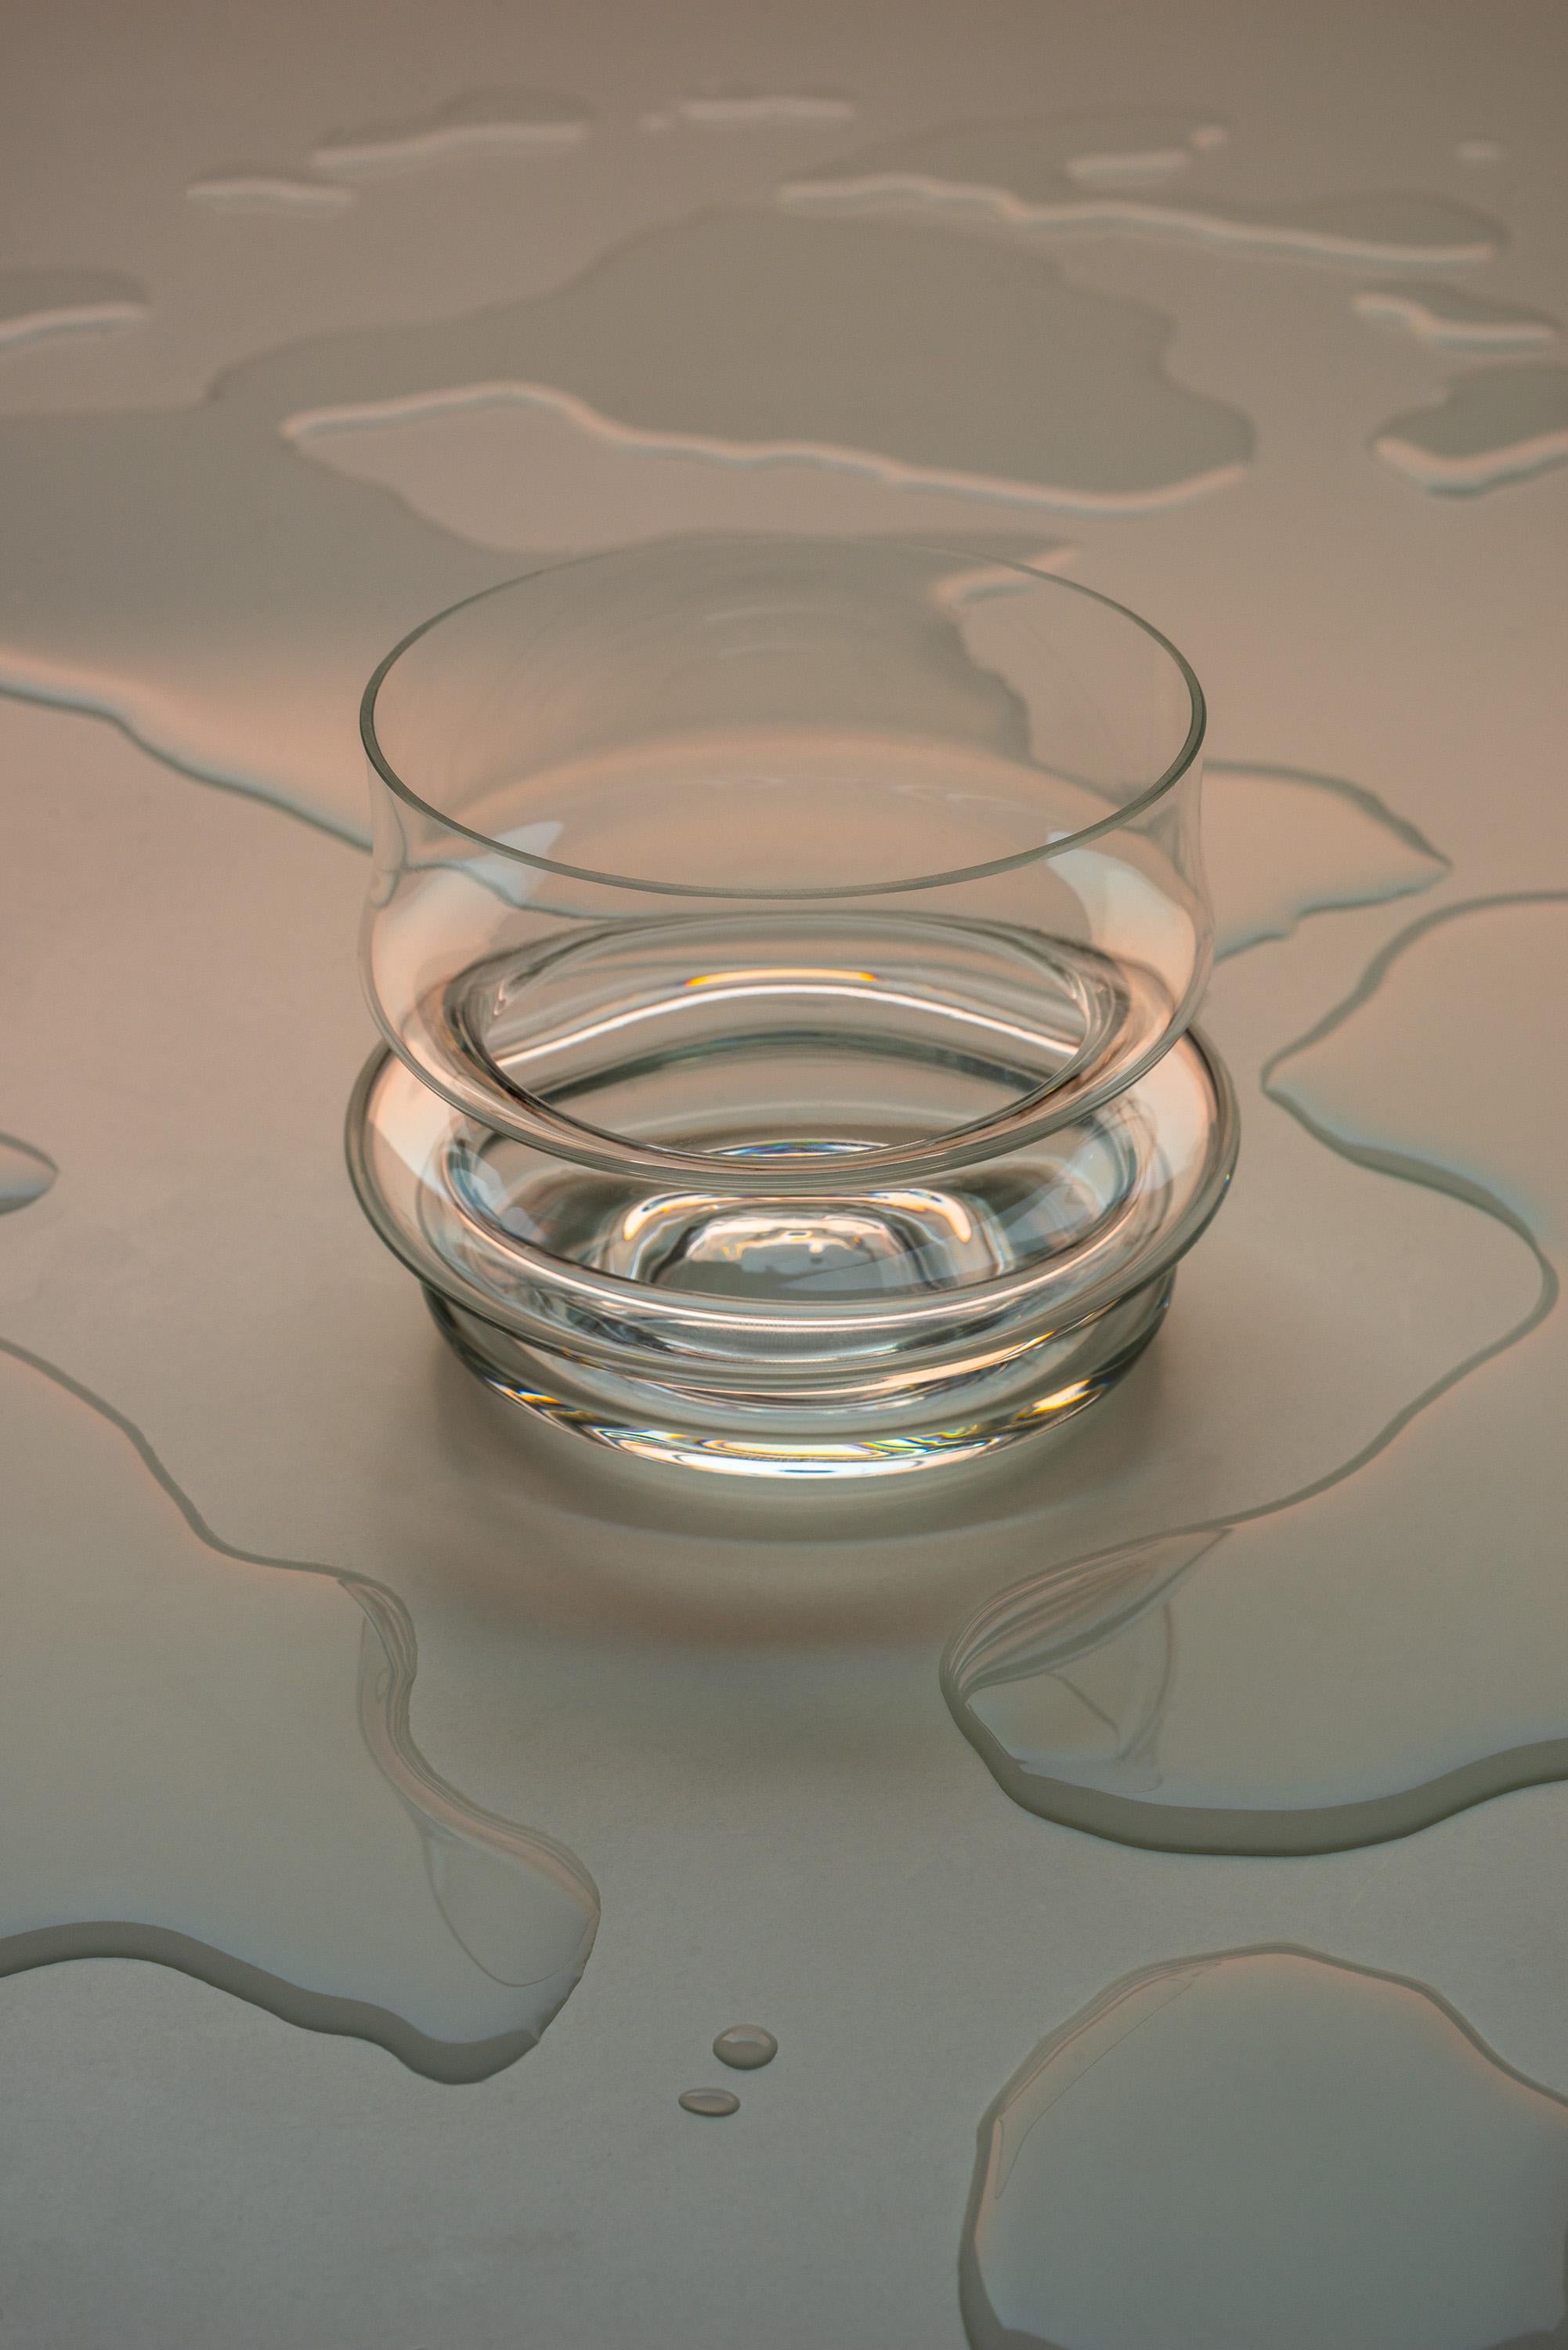 Kurzes Fuso-Glas von Ries
Abmessungen: T9,5 x H6,7 cm 
MATERIALIEN: Kristall

Auch verfügbar: Fuso Tall & Fuso Vase, bitte kontaktieren Sie uns

Ries ist ein Studio mit Sitz in Buenos Aires, Argentinien, das sich auf Produkt- und zeitgenössisches